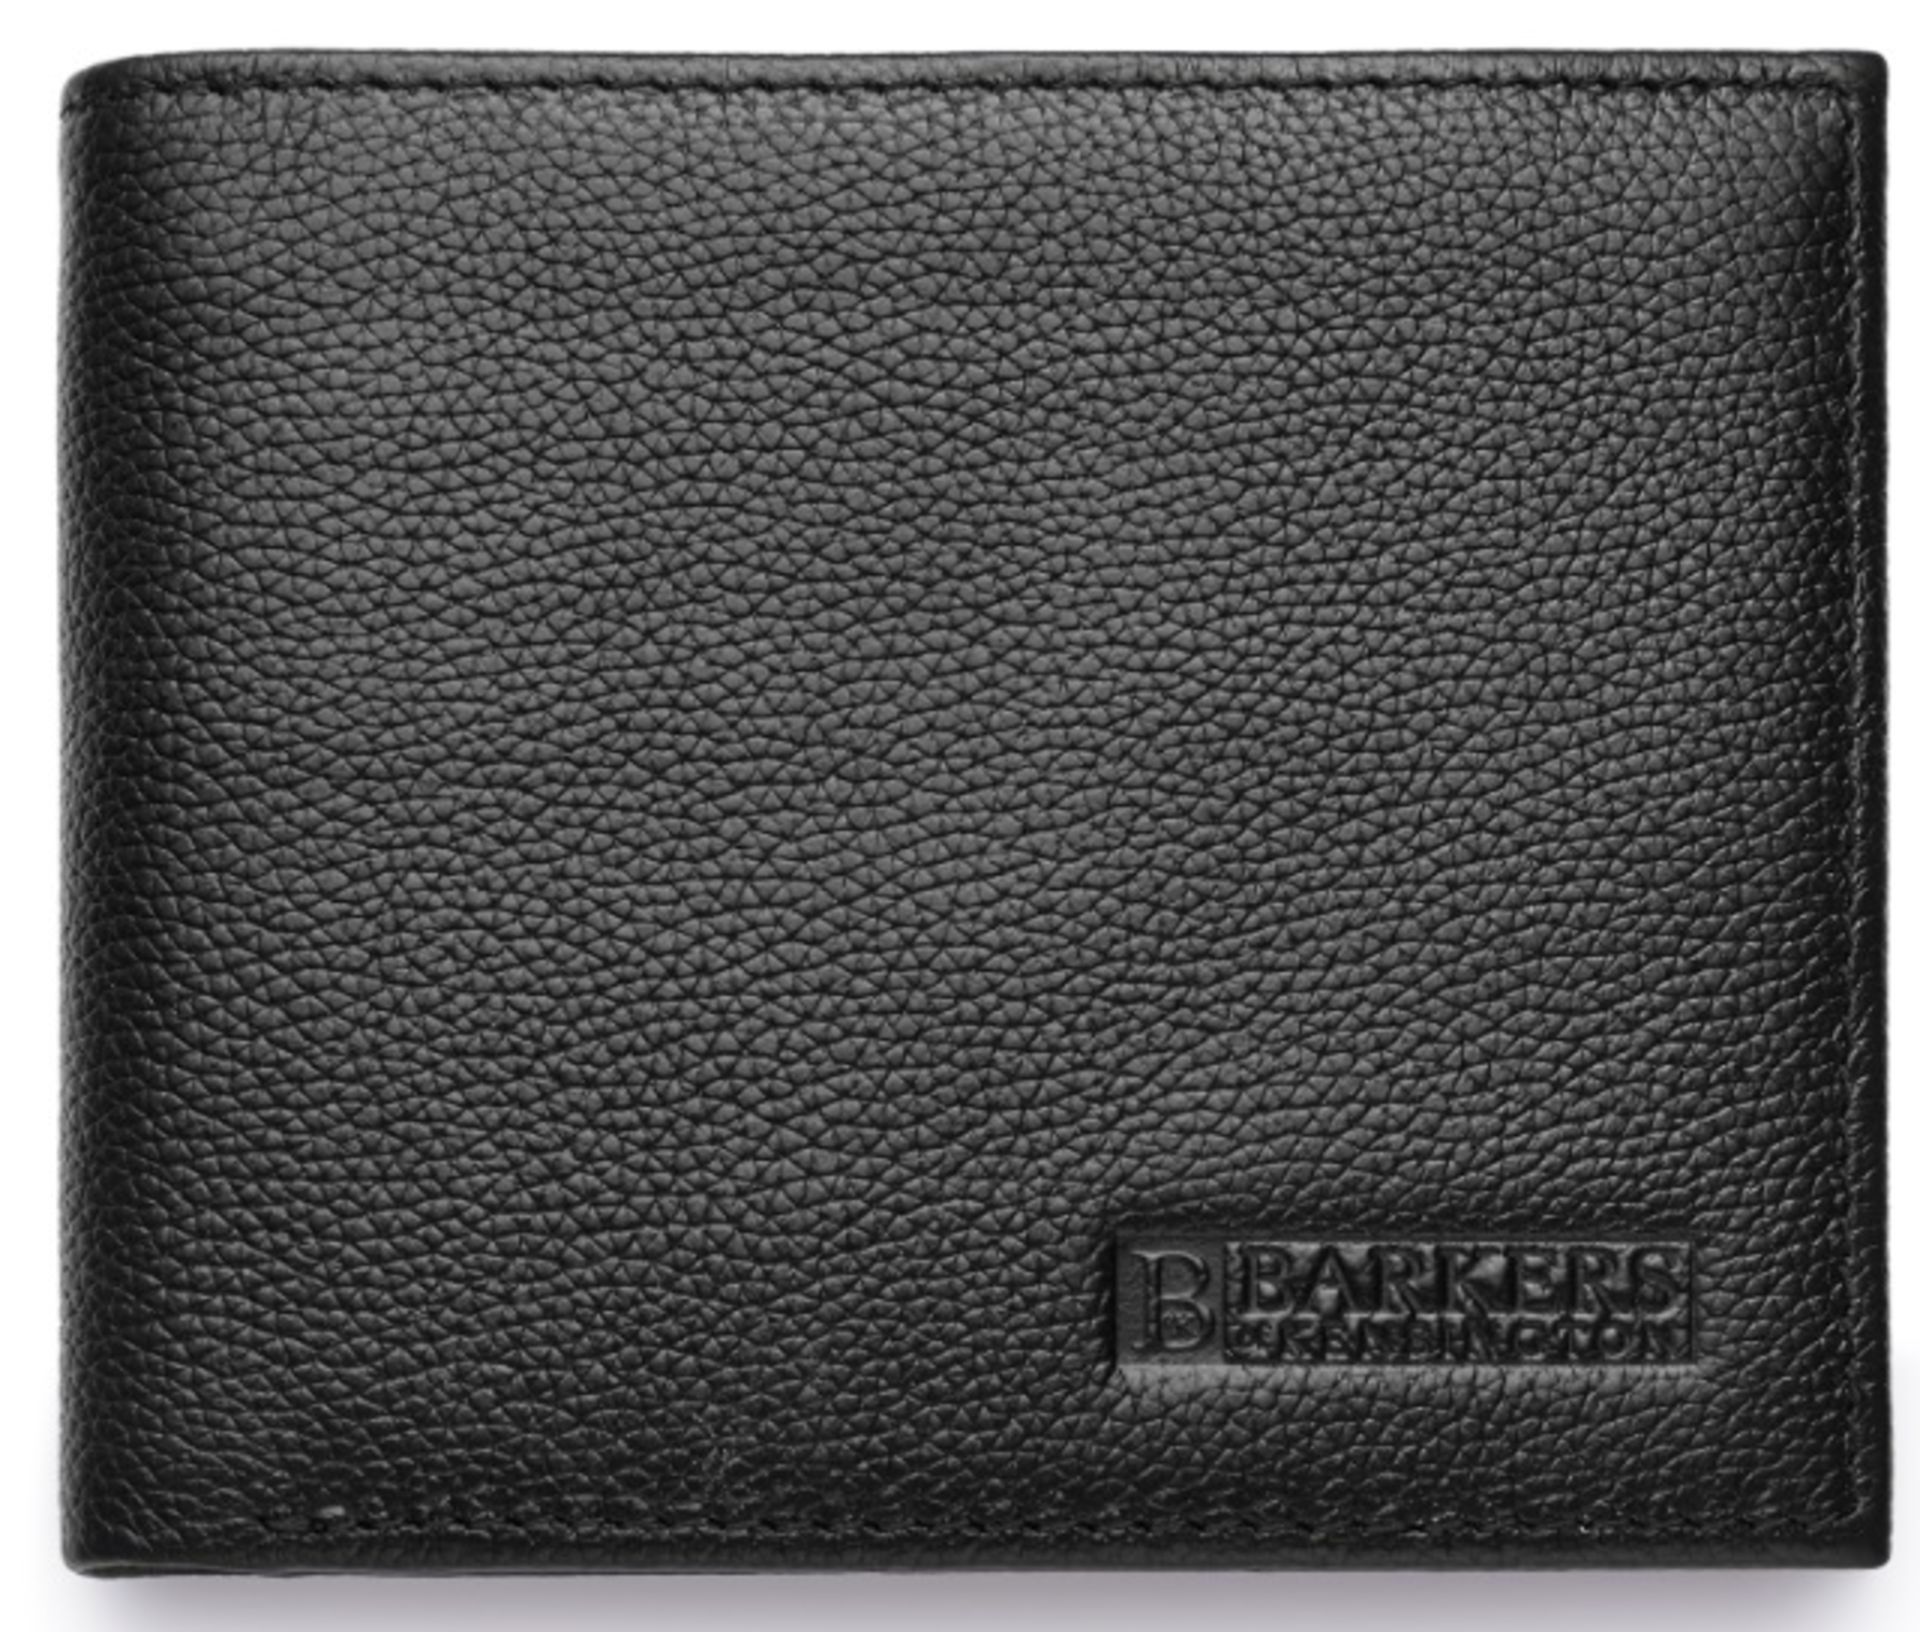 + VAT Brand New Barkers Of Kensington Gents Black Genuine Leather Wallet (SRP £69.99)